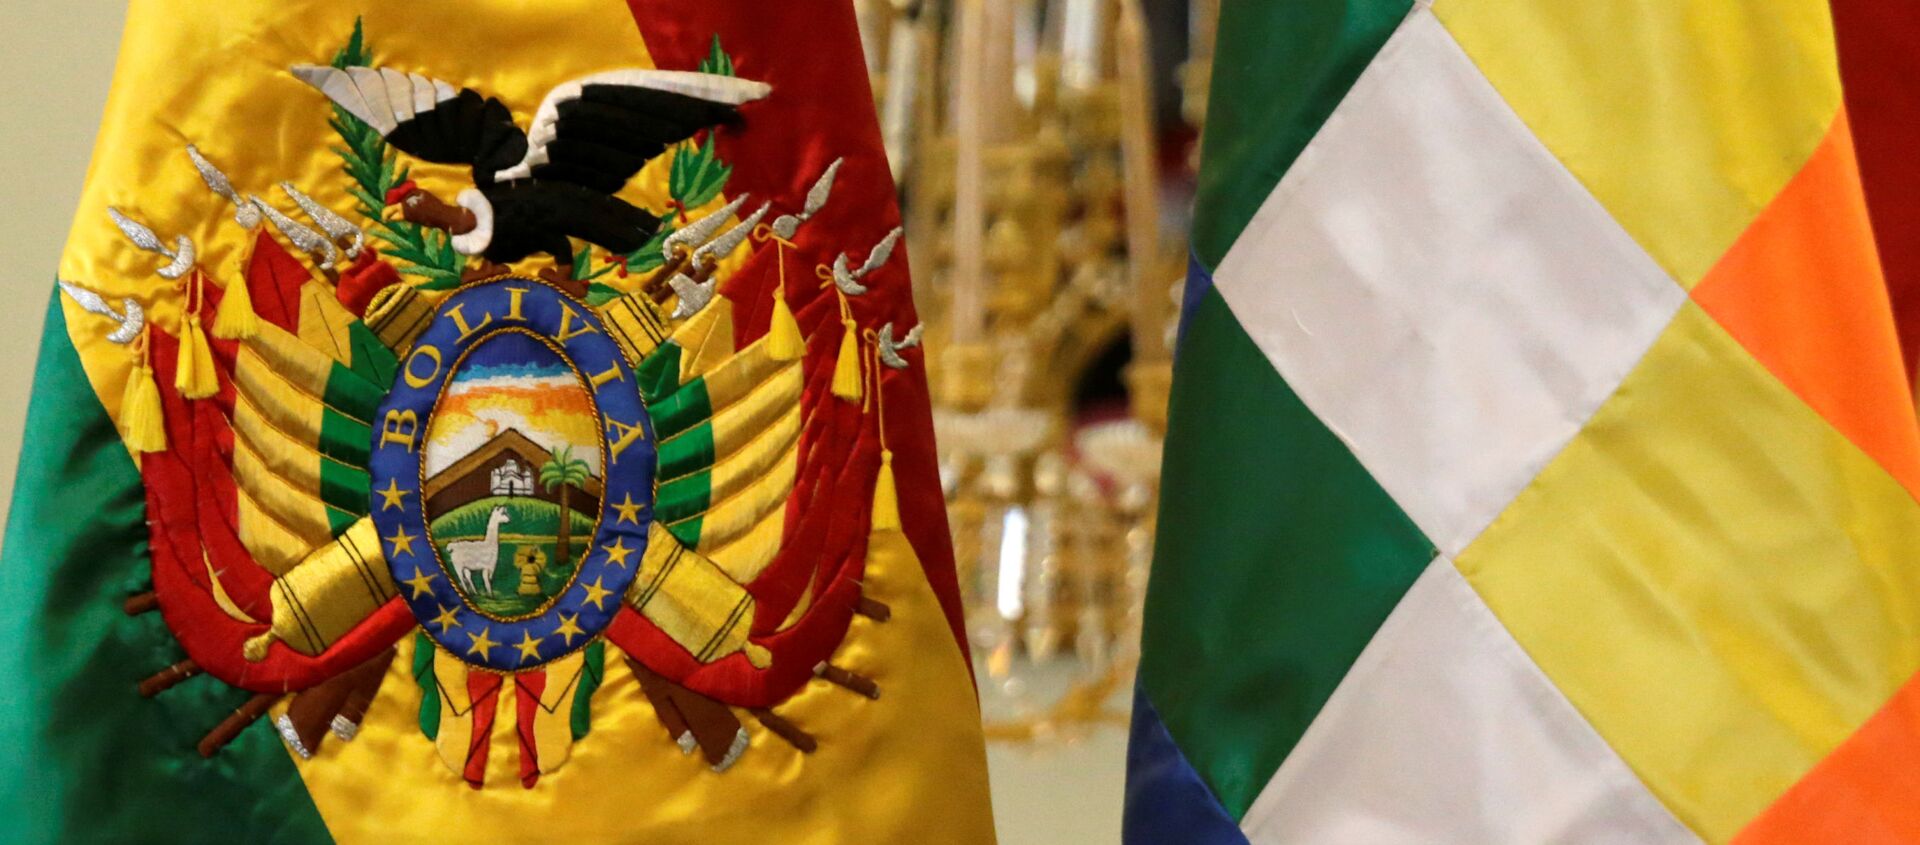 Bandera de Bolivia - Sputnik Mundo, 1920, 31.12.2019